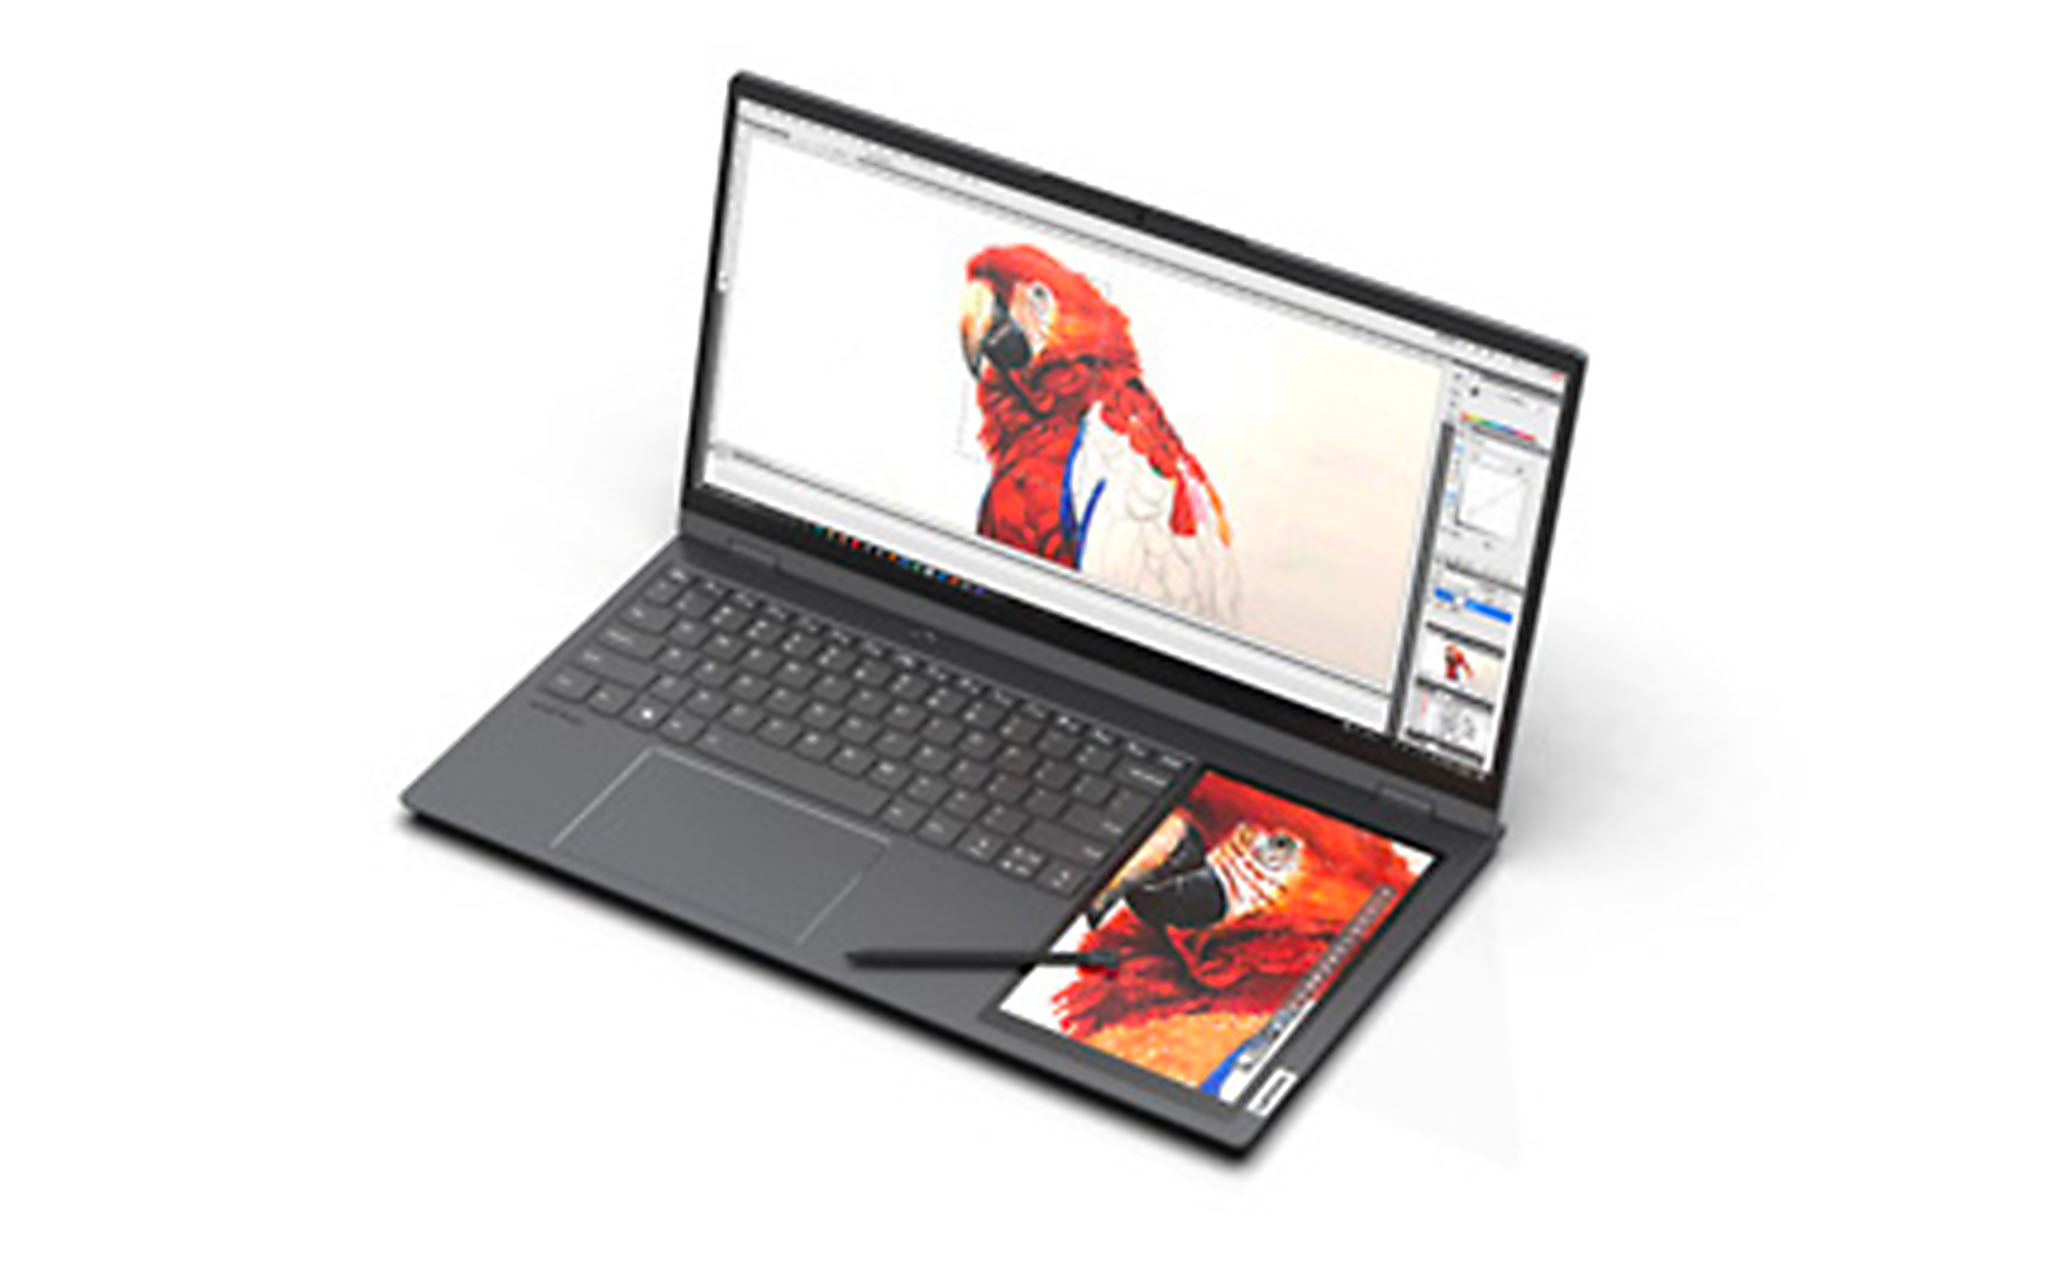 Lenovo Thinkbook Plus 17 inch sẽ có màn hình phụ kế bên bàn phím, được hỗ trợ bút vẽ?